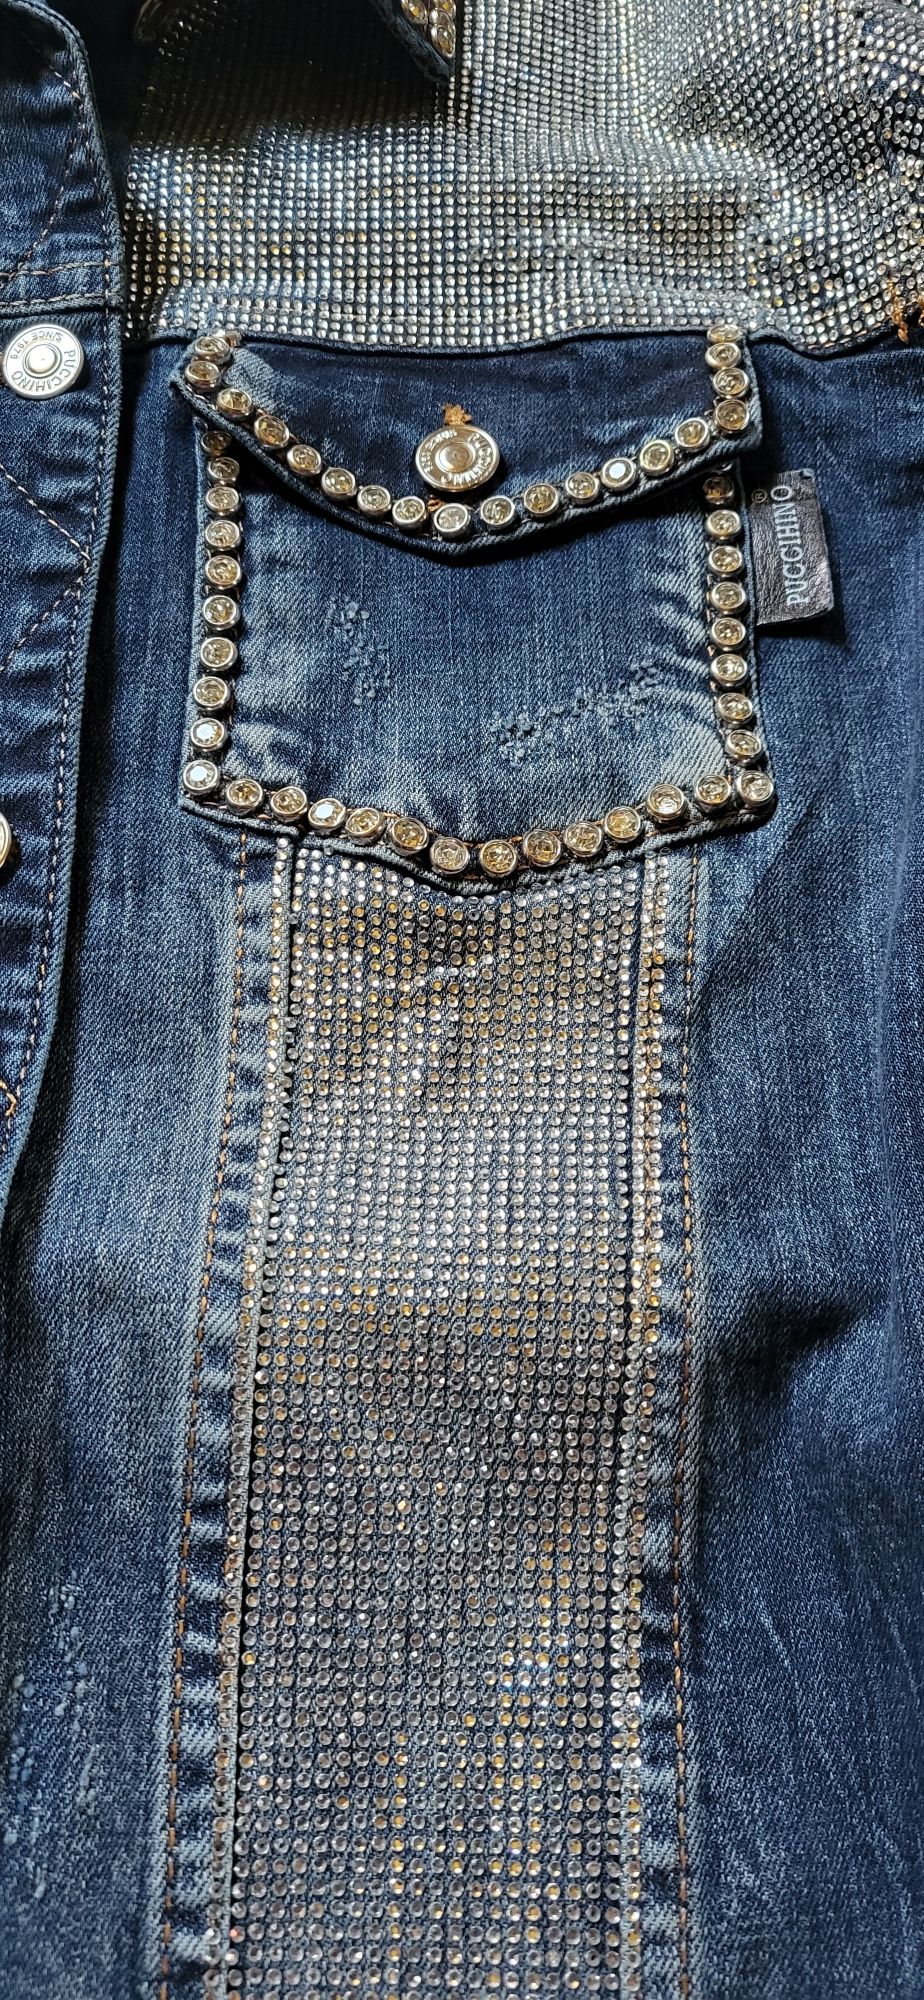 Puccihino włoska katana kurtka jeansowa dżins zdobienia cyrkonie S M